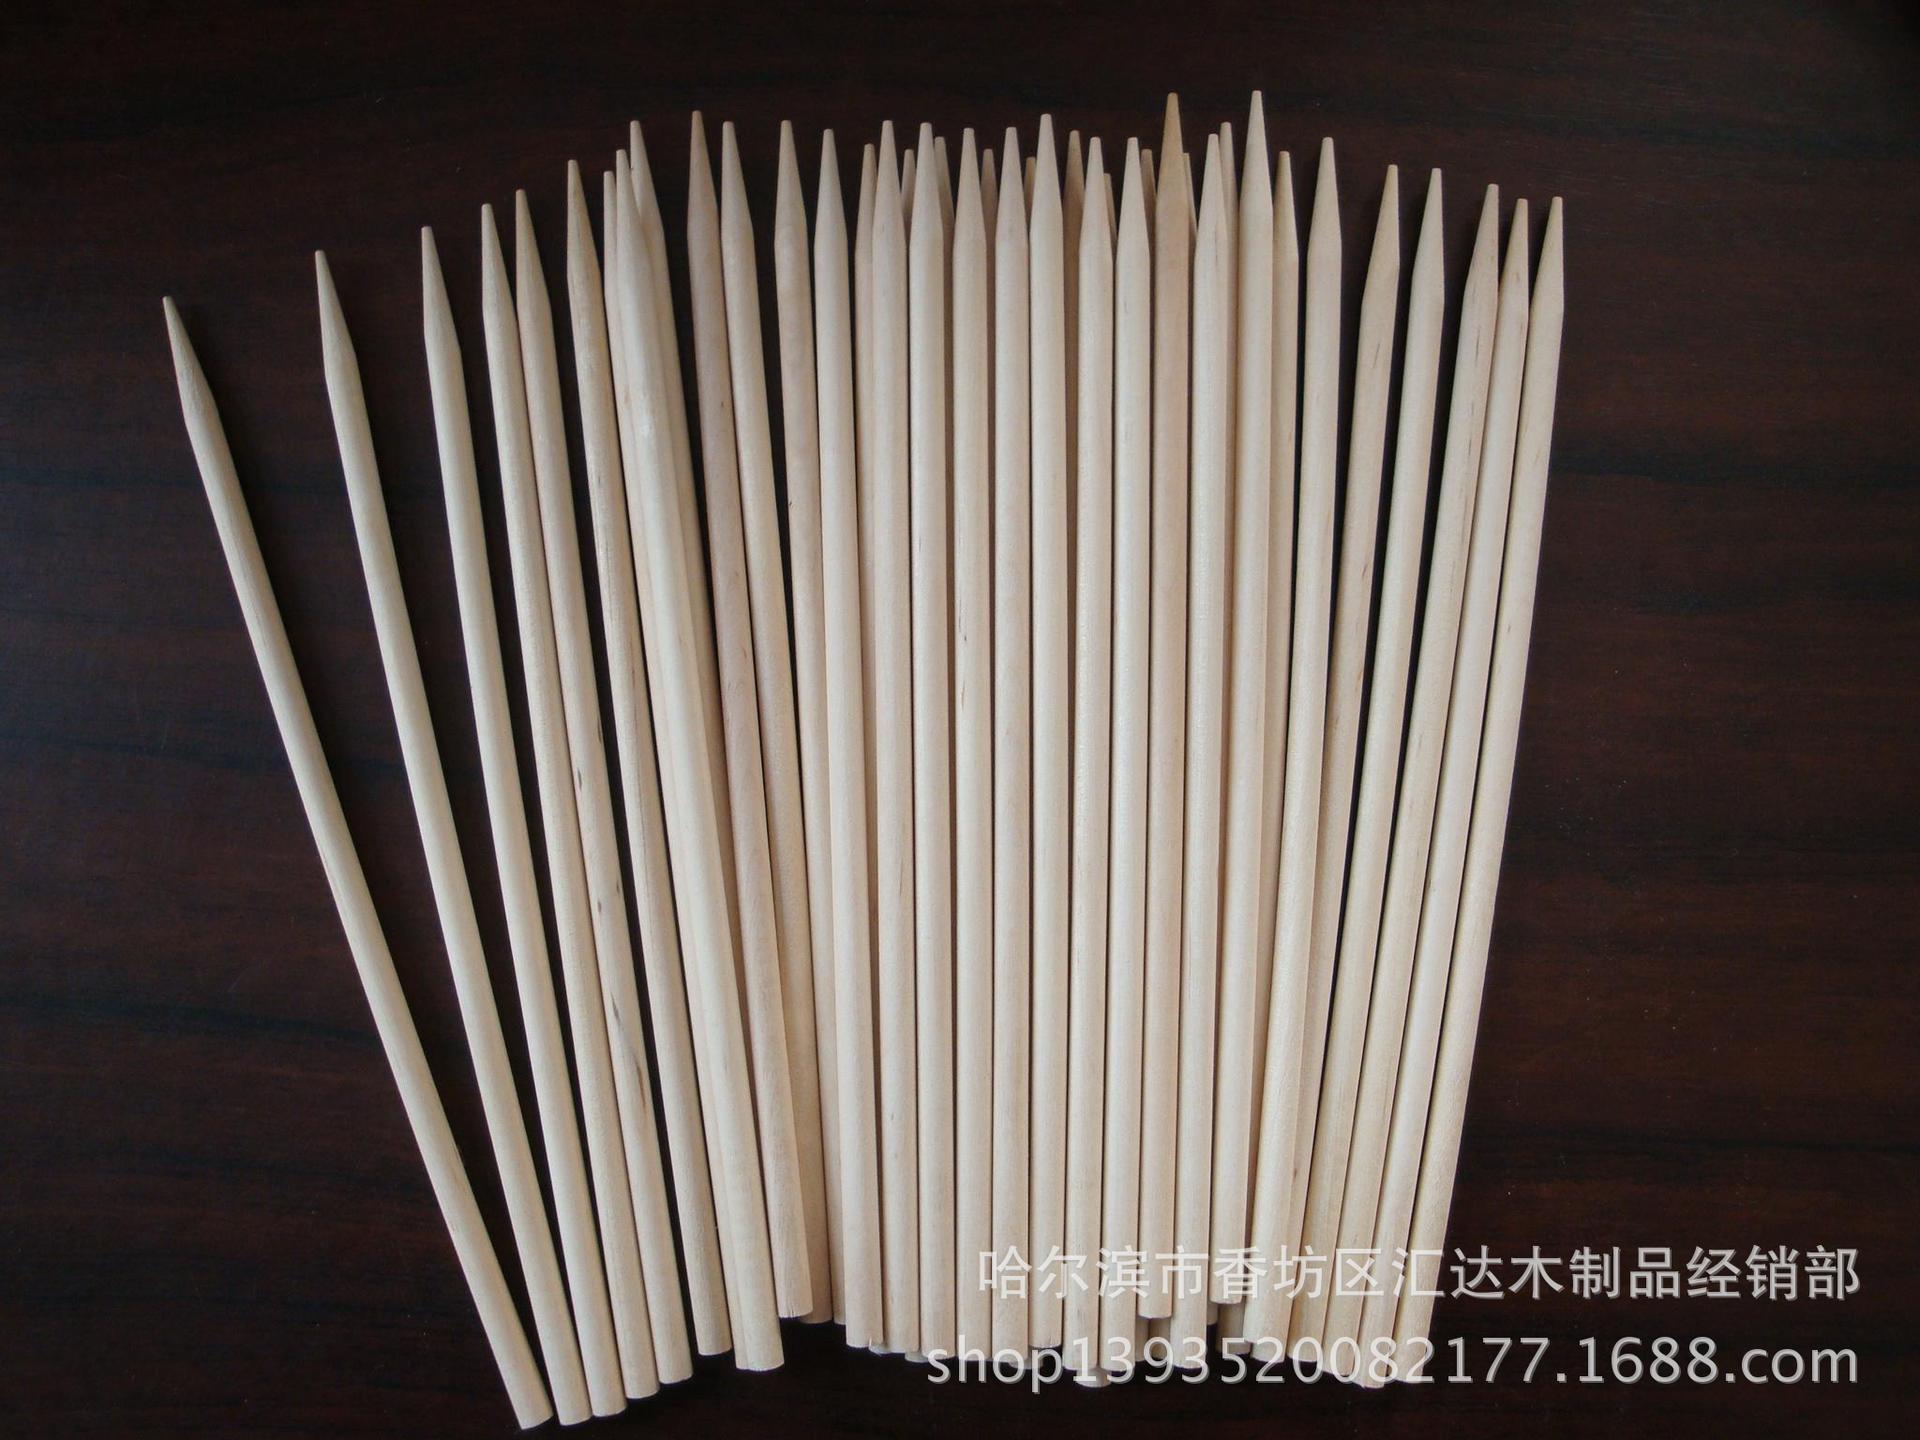 厂家供应棒糖棒 木质棒糖棒 环保磨尖棒糖棒 一次性棒糖棒示例图10